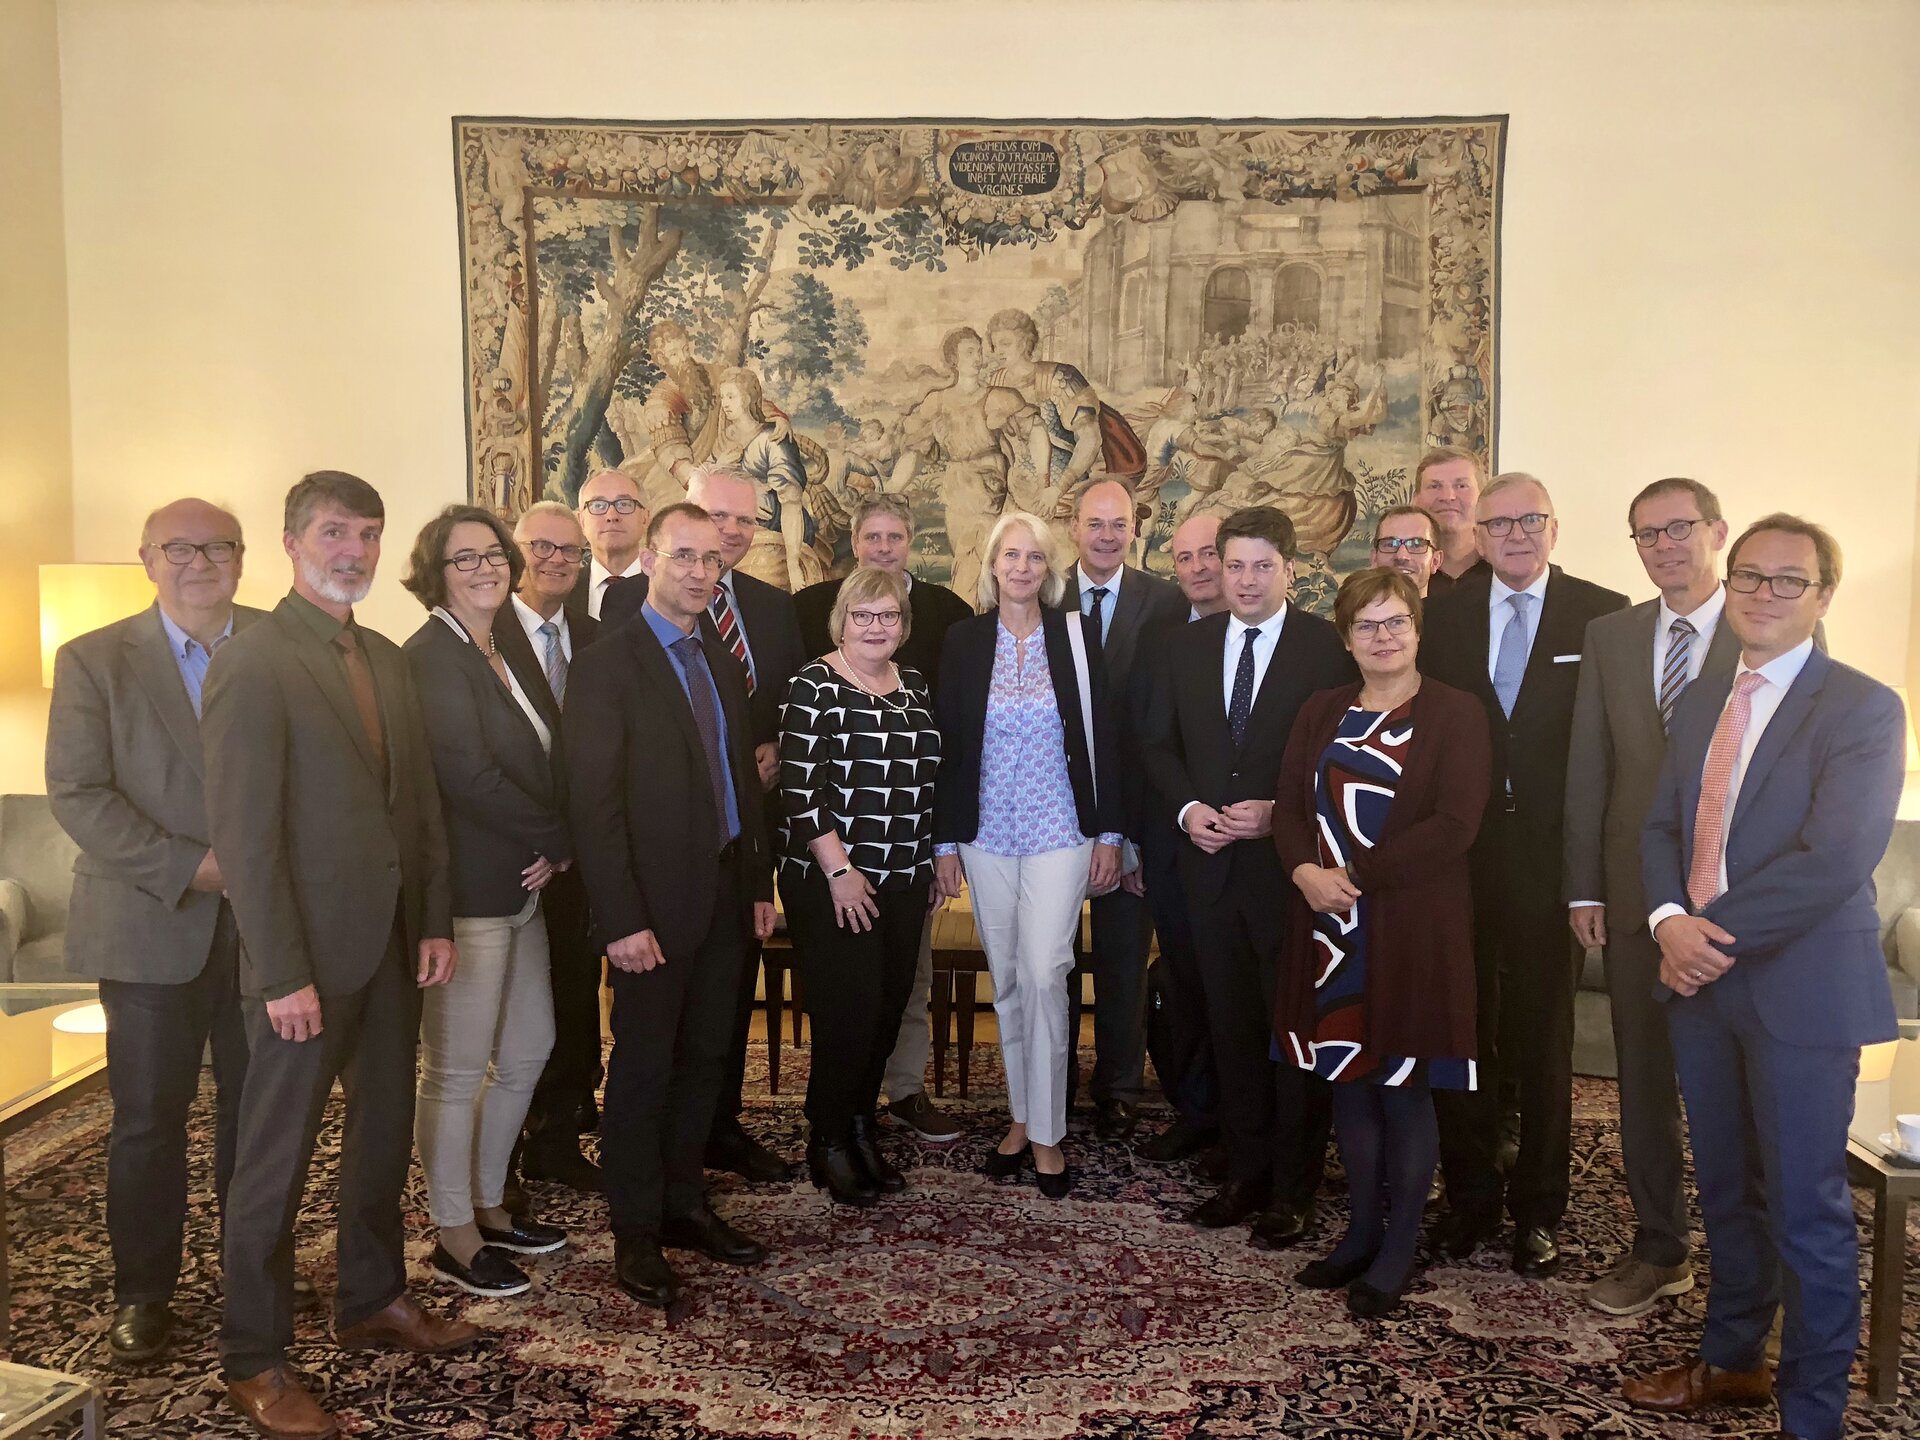 Hochschulpräsident Weisensee (5.v.li., hinten) und die niedersächsische Delegation loteten Möglichkeiten der Zusammenarbeit mit den nordischen wissenschaftlichen Einrichtungen aus.